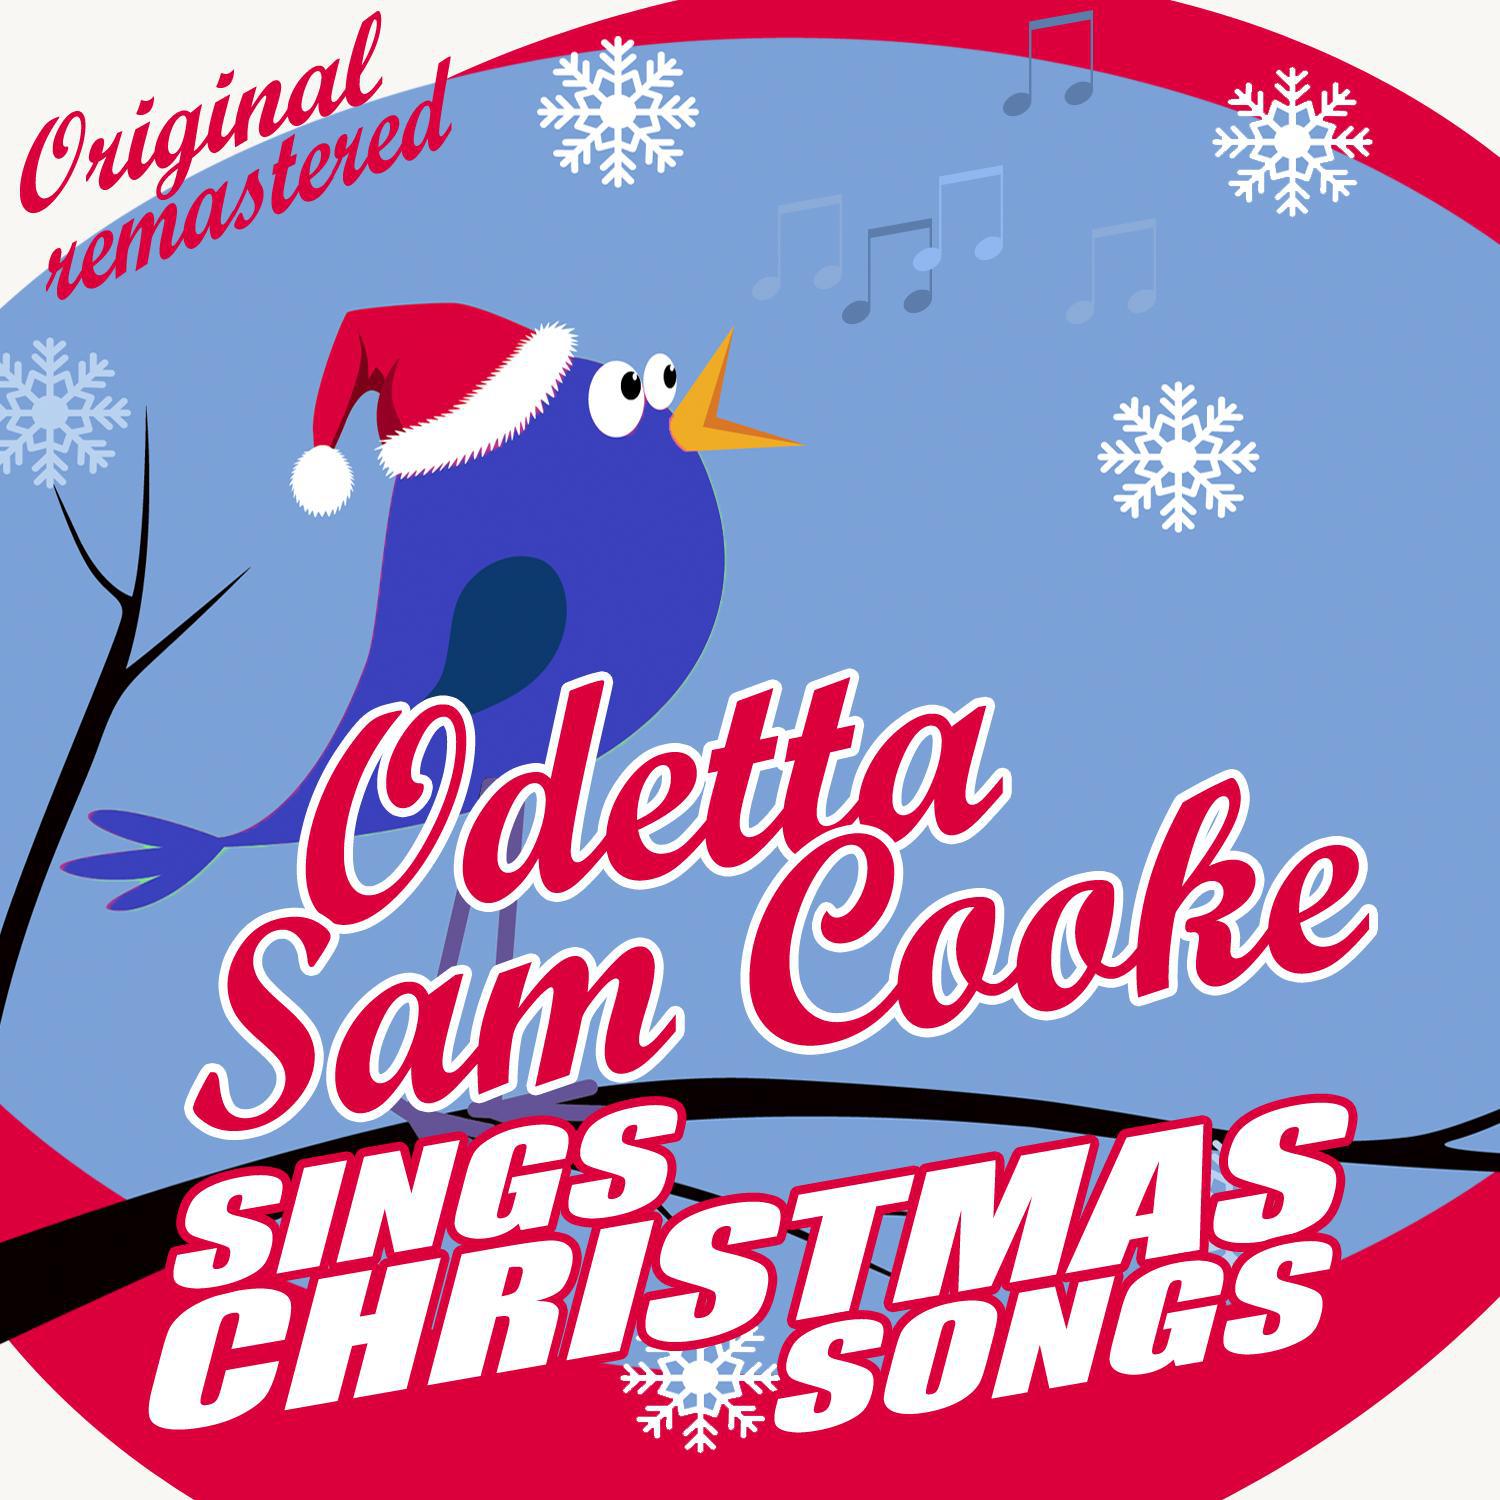 Odetta & Sam Cooke Sings Christmas Songs